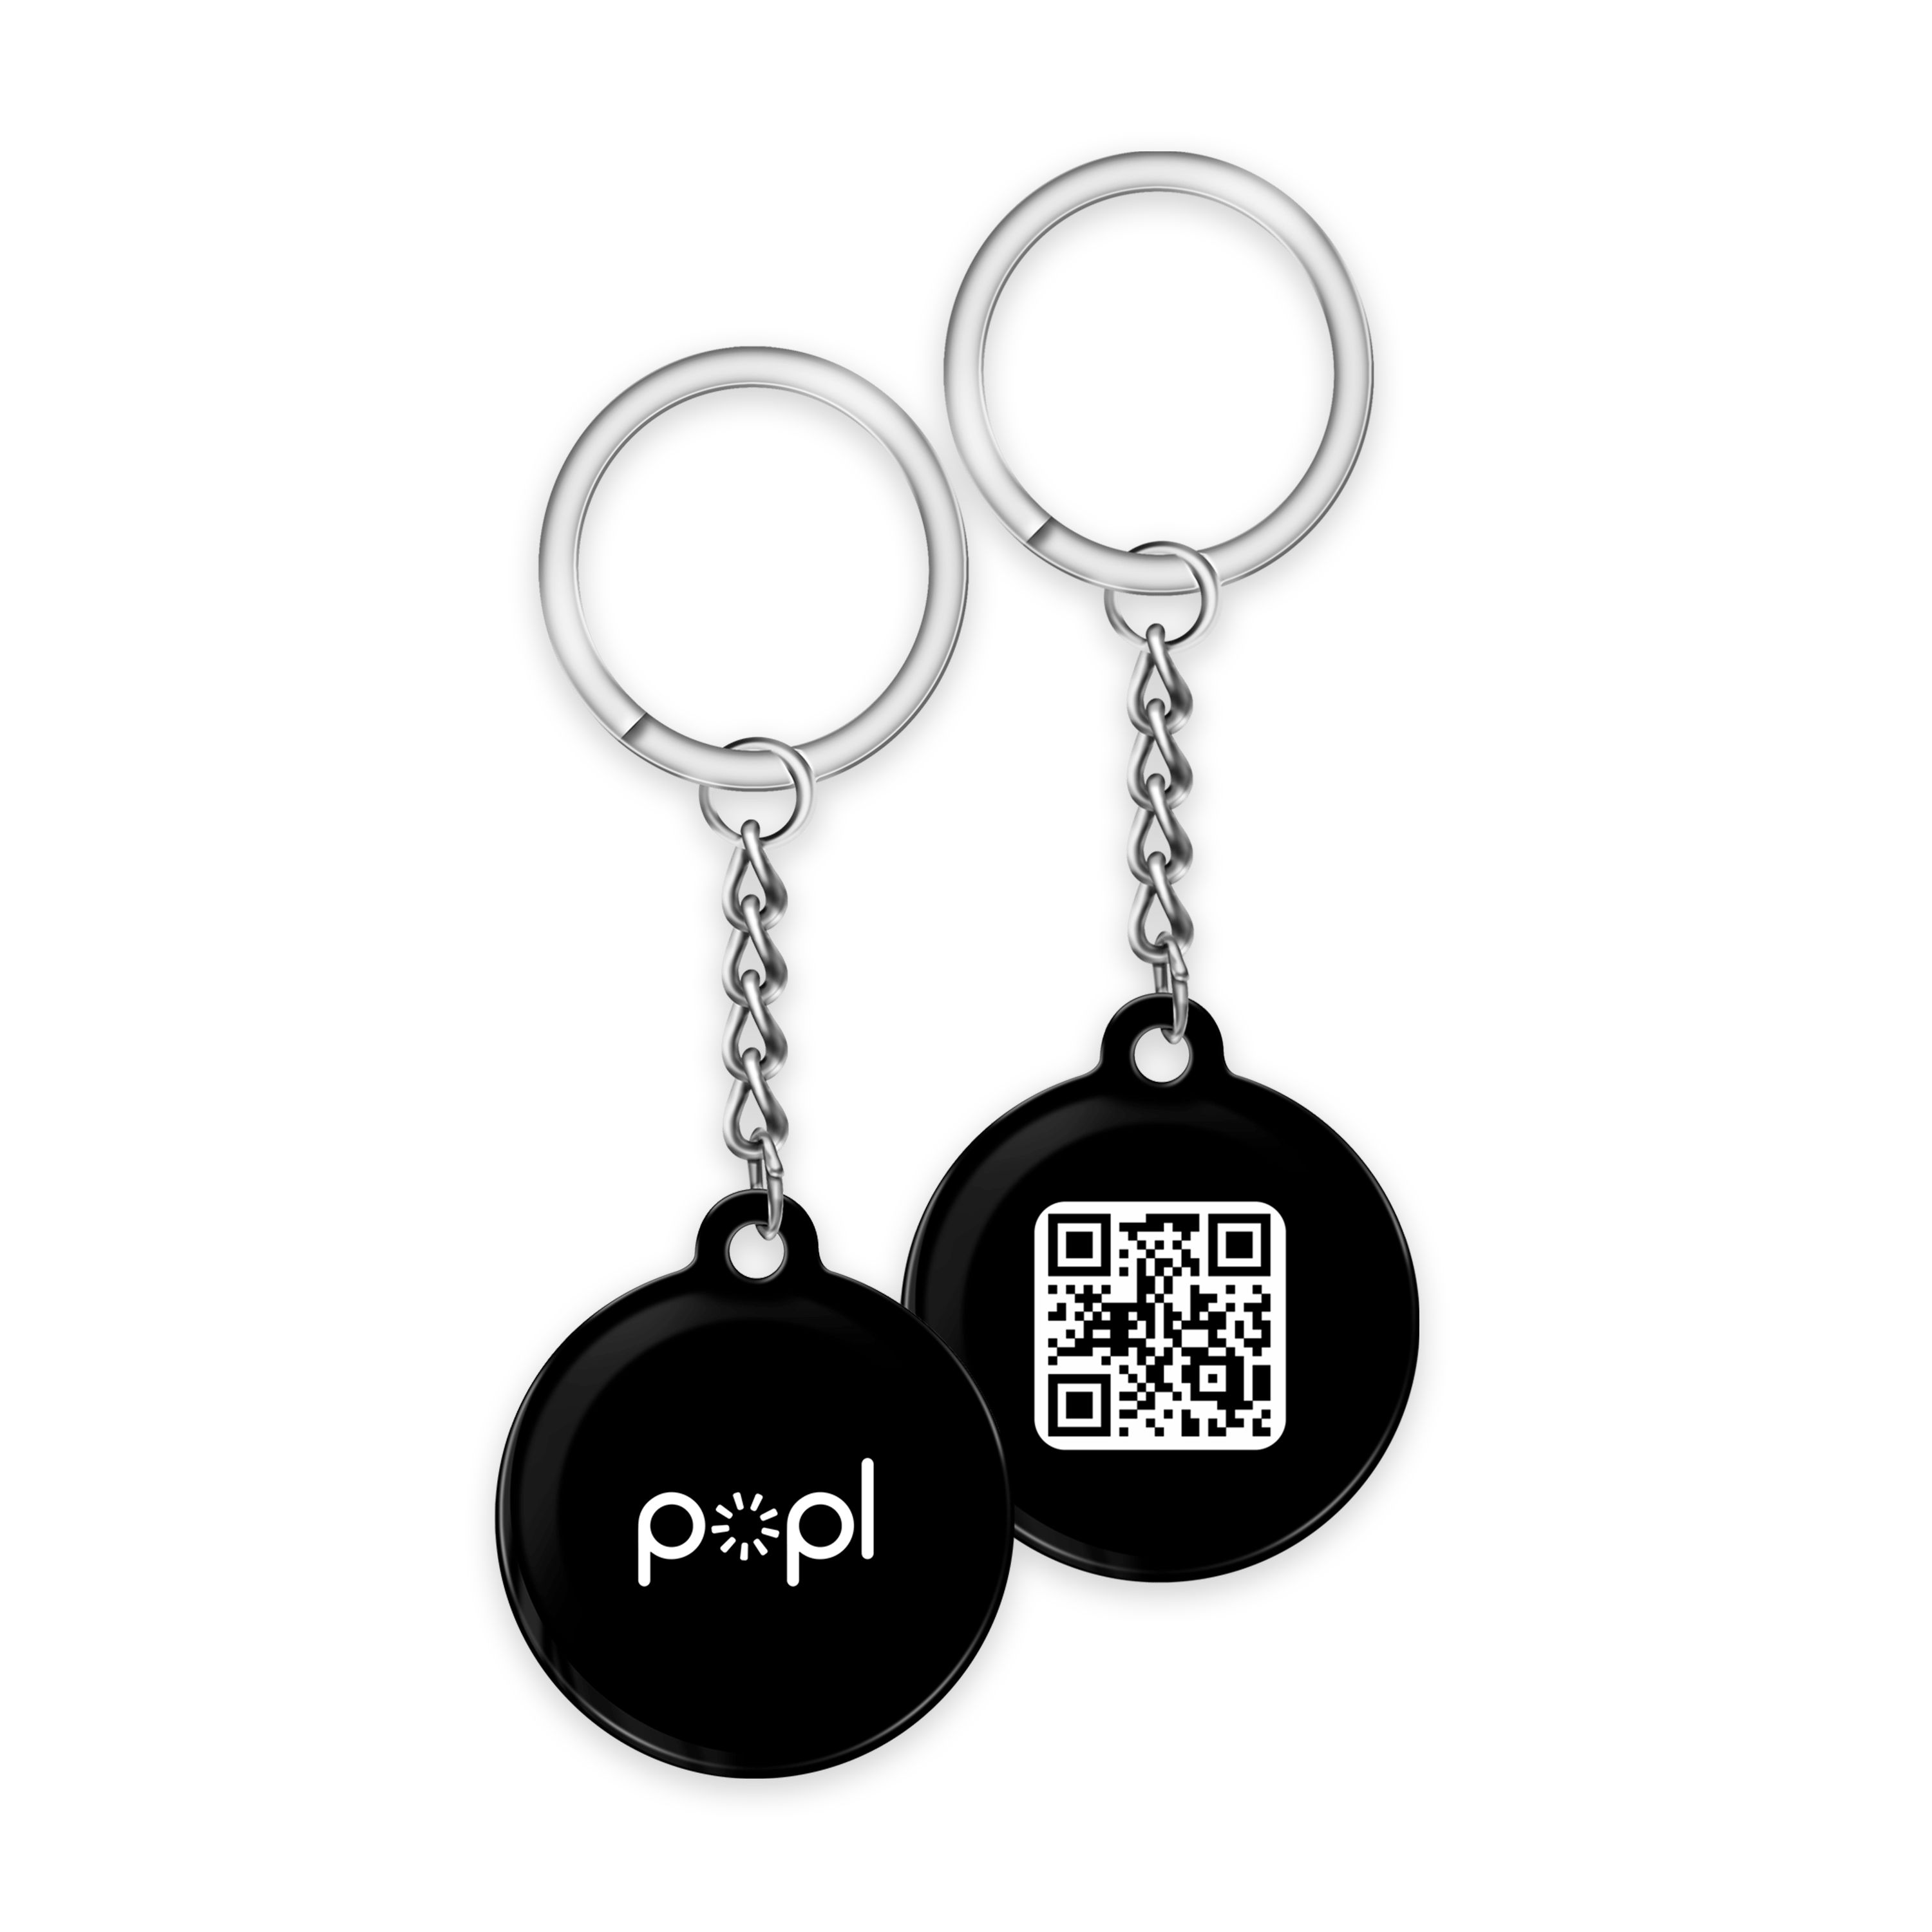 Popl Keychain - Popl